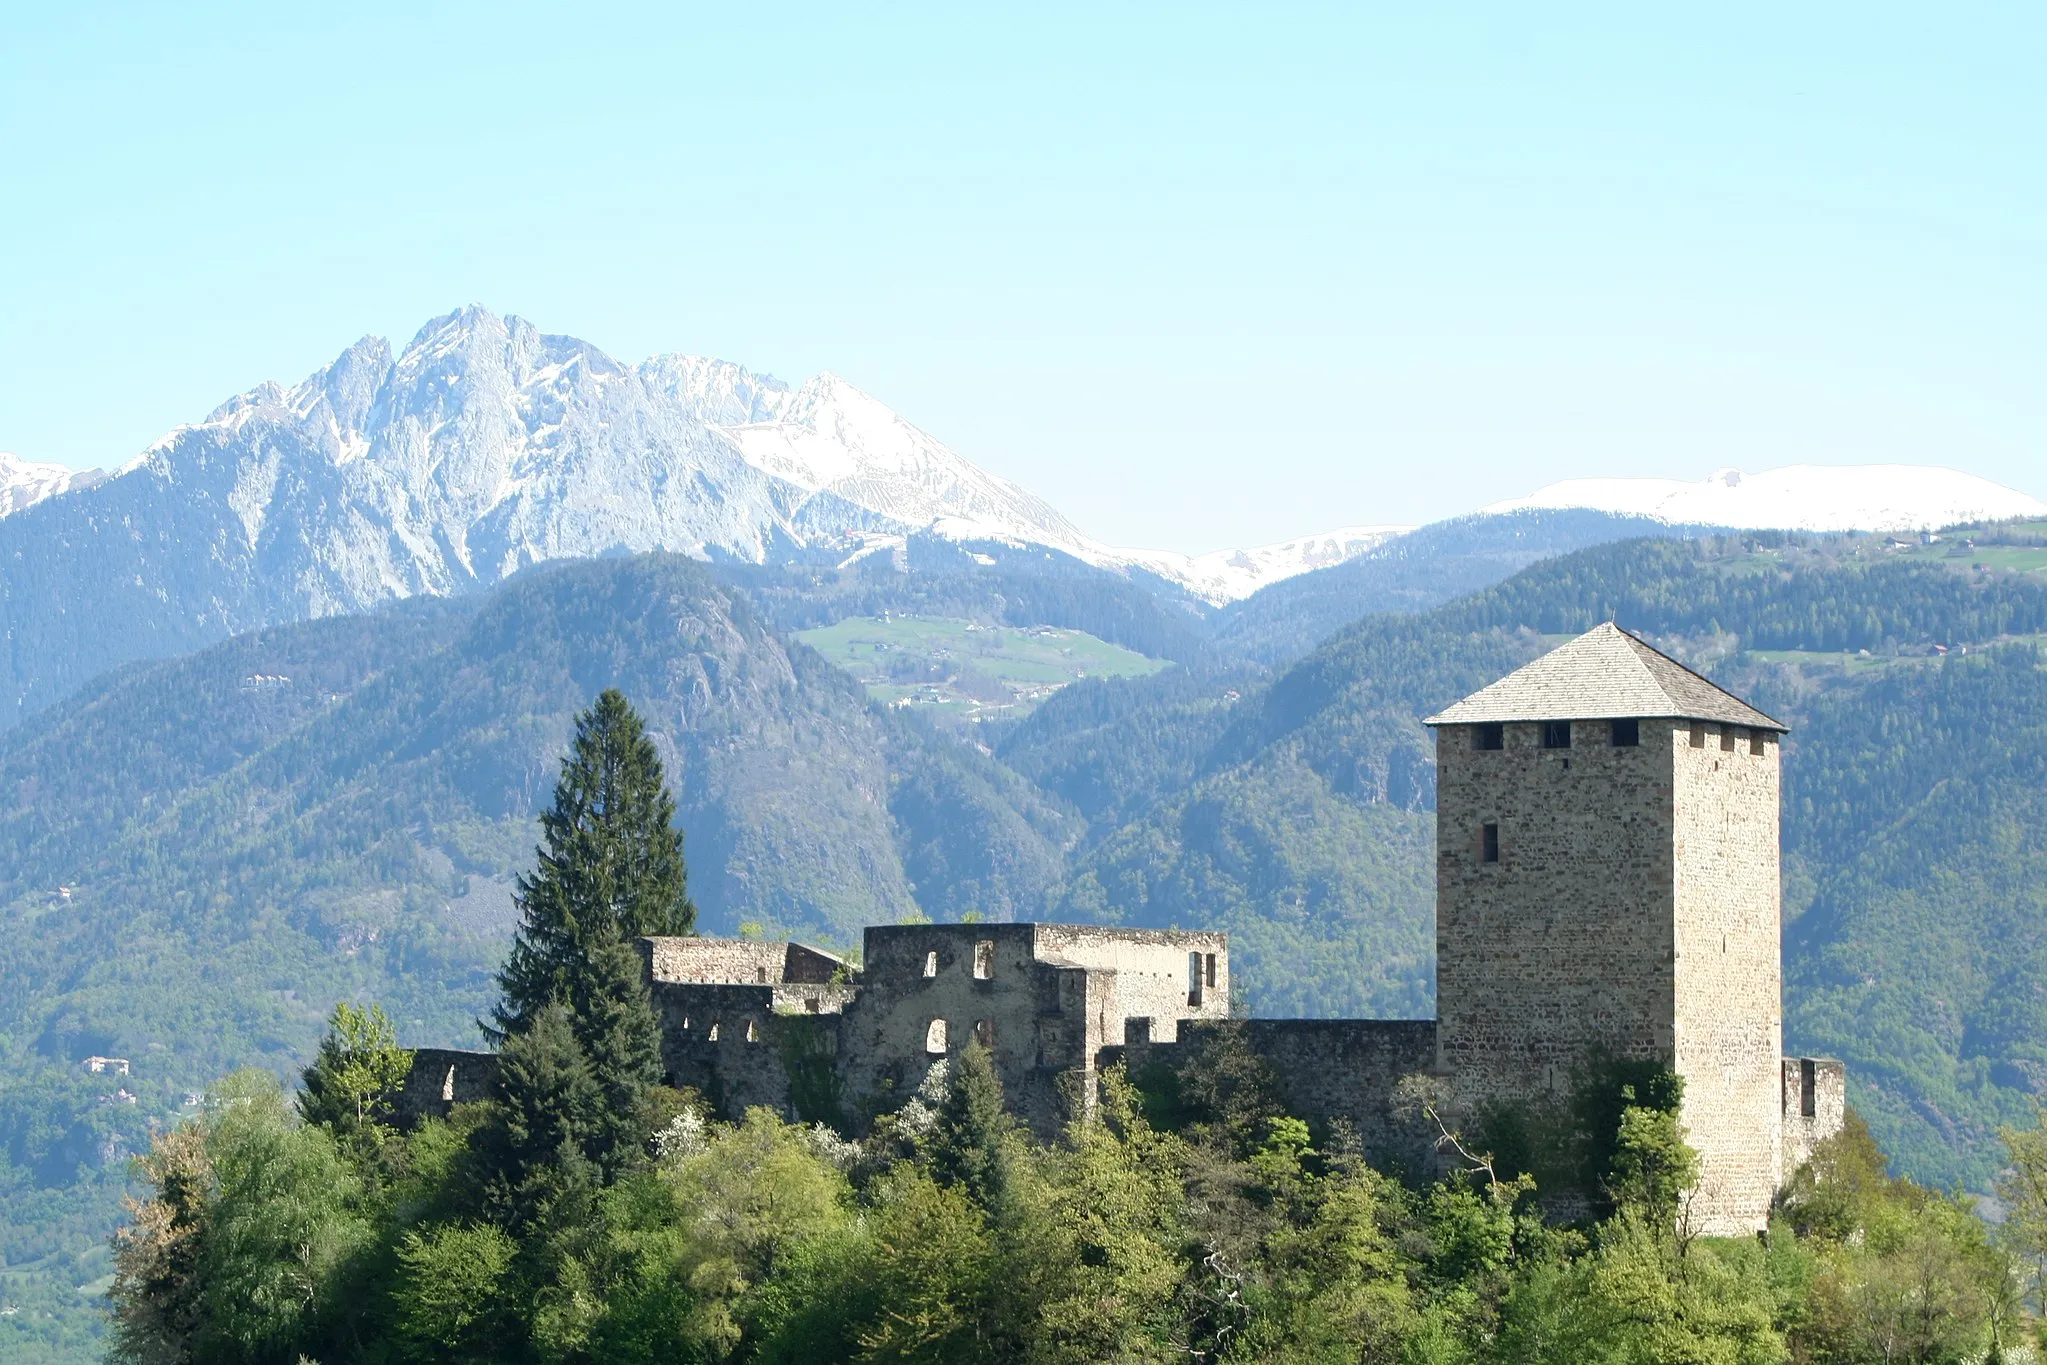 Kuva kohteesta Provincia Autonoma di Bolzano/Bozen